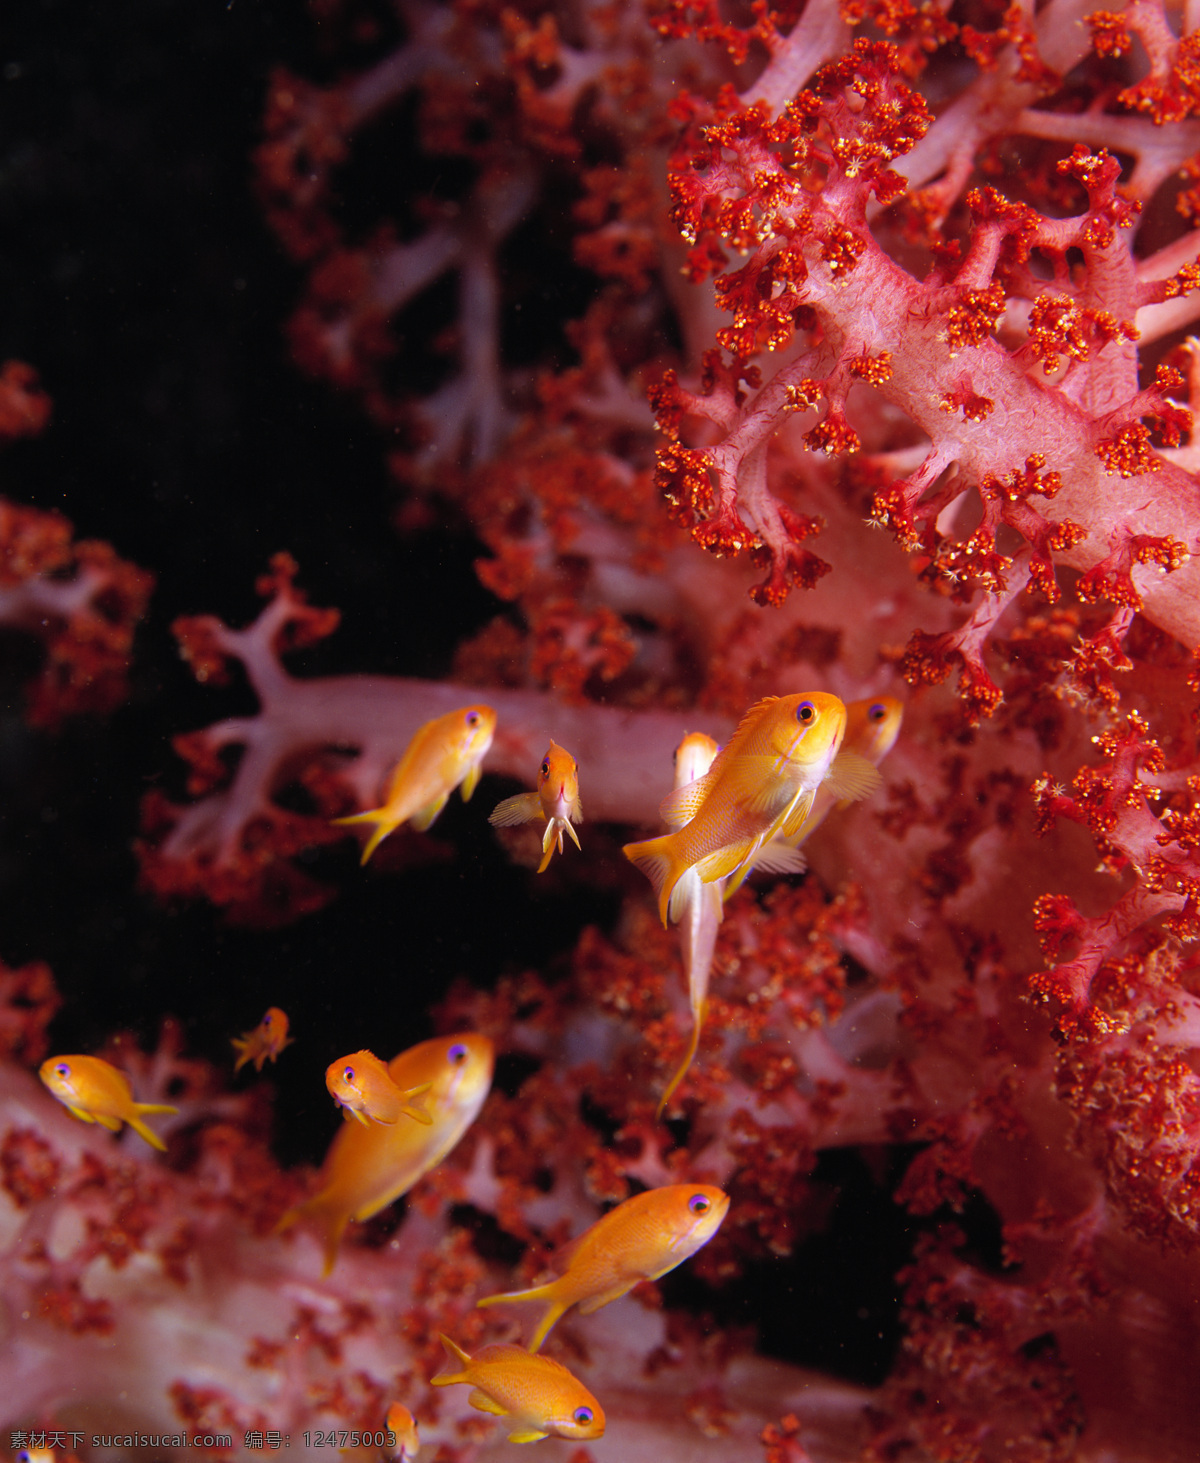 海底 鱼群 高清 海底世界 海洋馆 海鱼 海水 深海 水族 鱼类 海洋生物 生物世界 珊瑚 美丽风景 高清图片 海洋海边 自然景观 黑色